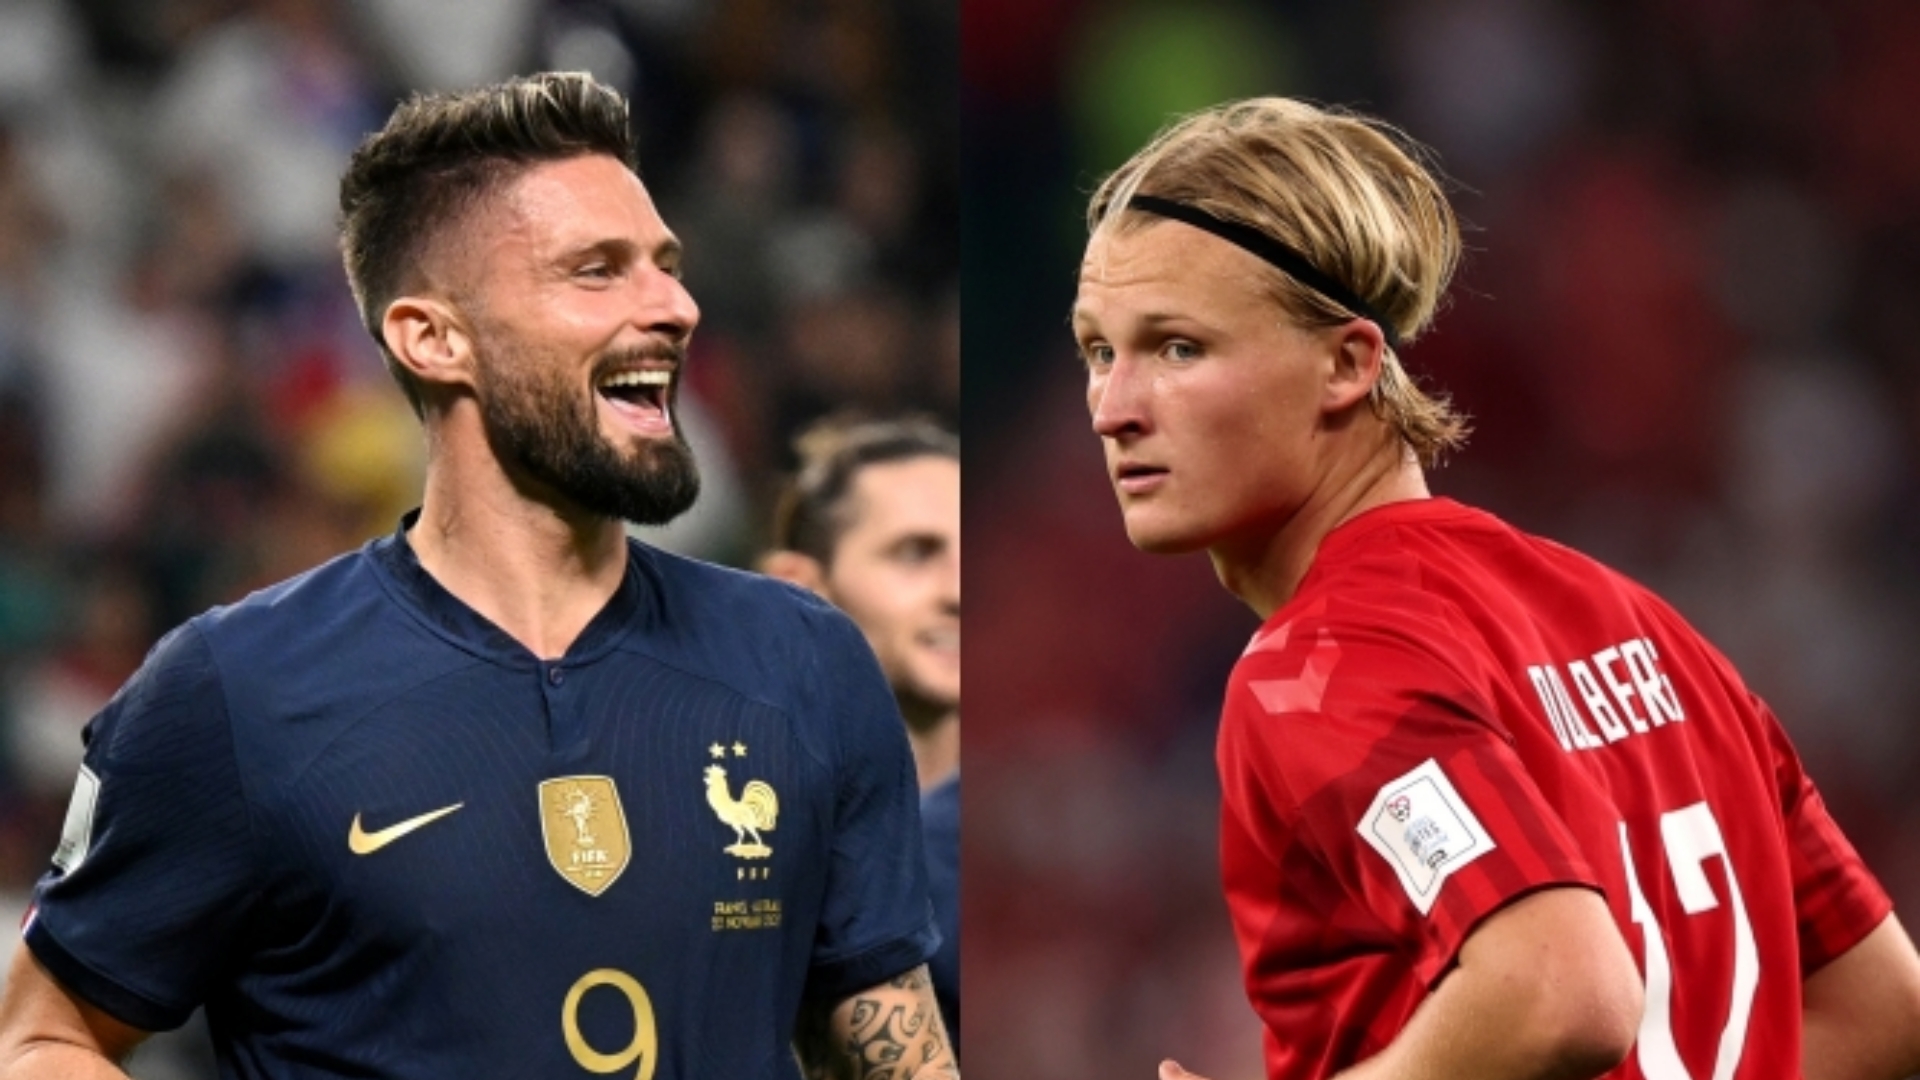 القنوات الناقلة لمباراة فرنسا والدنمارك في كأس العالم 2022